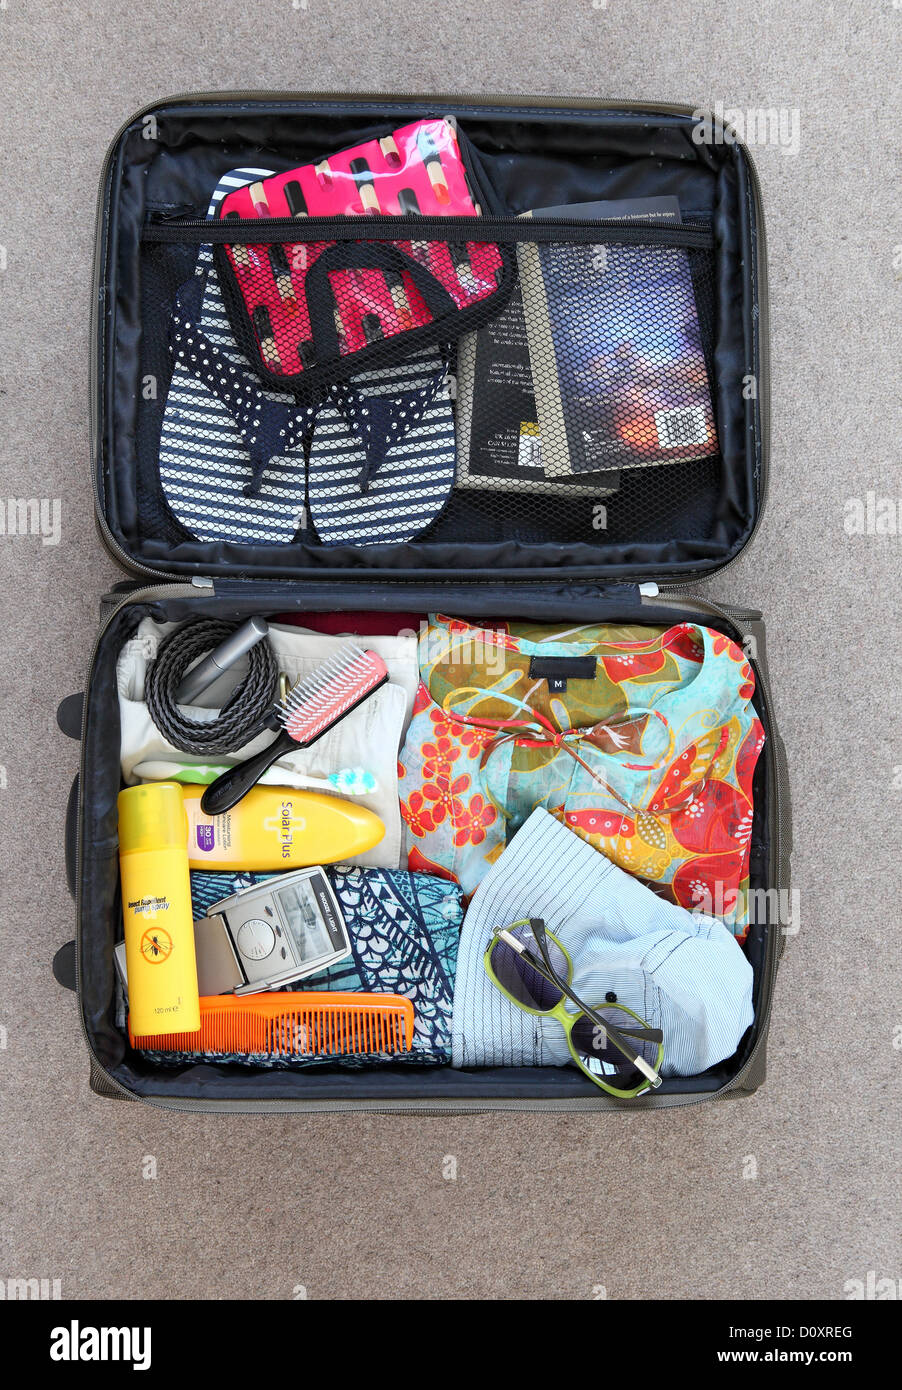 Koffer gepackt für Urlaub Stockfotografie - Alamy